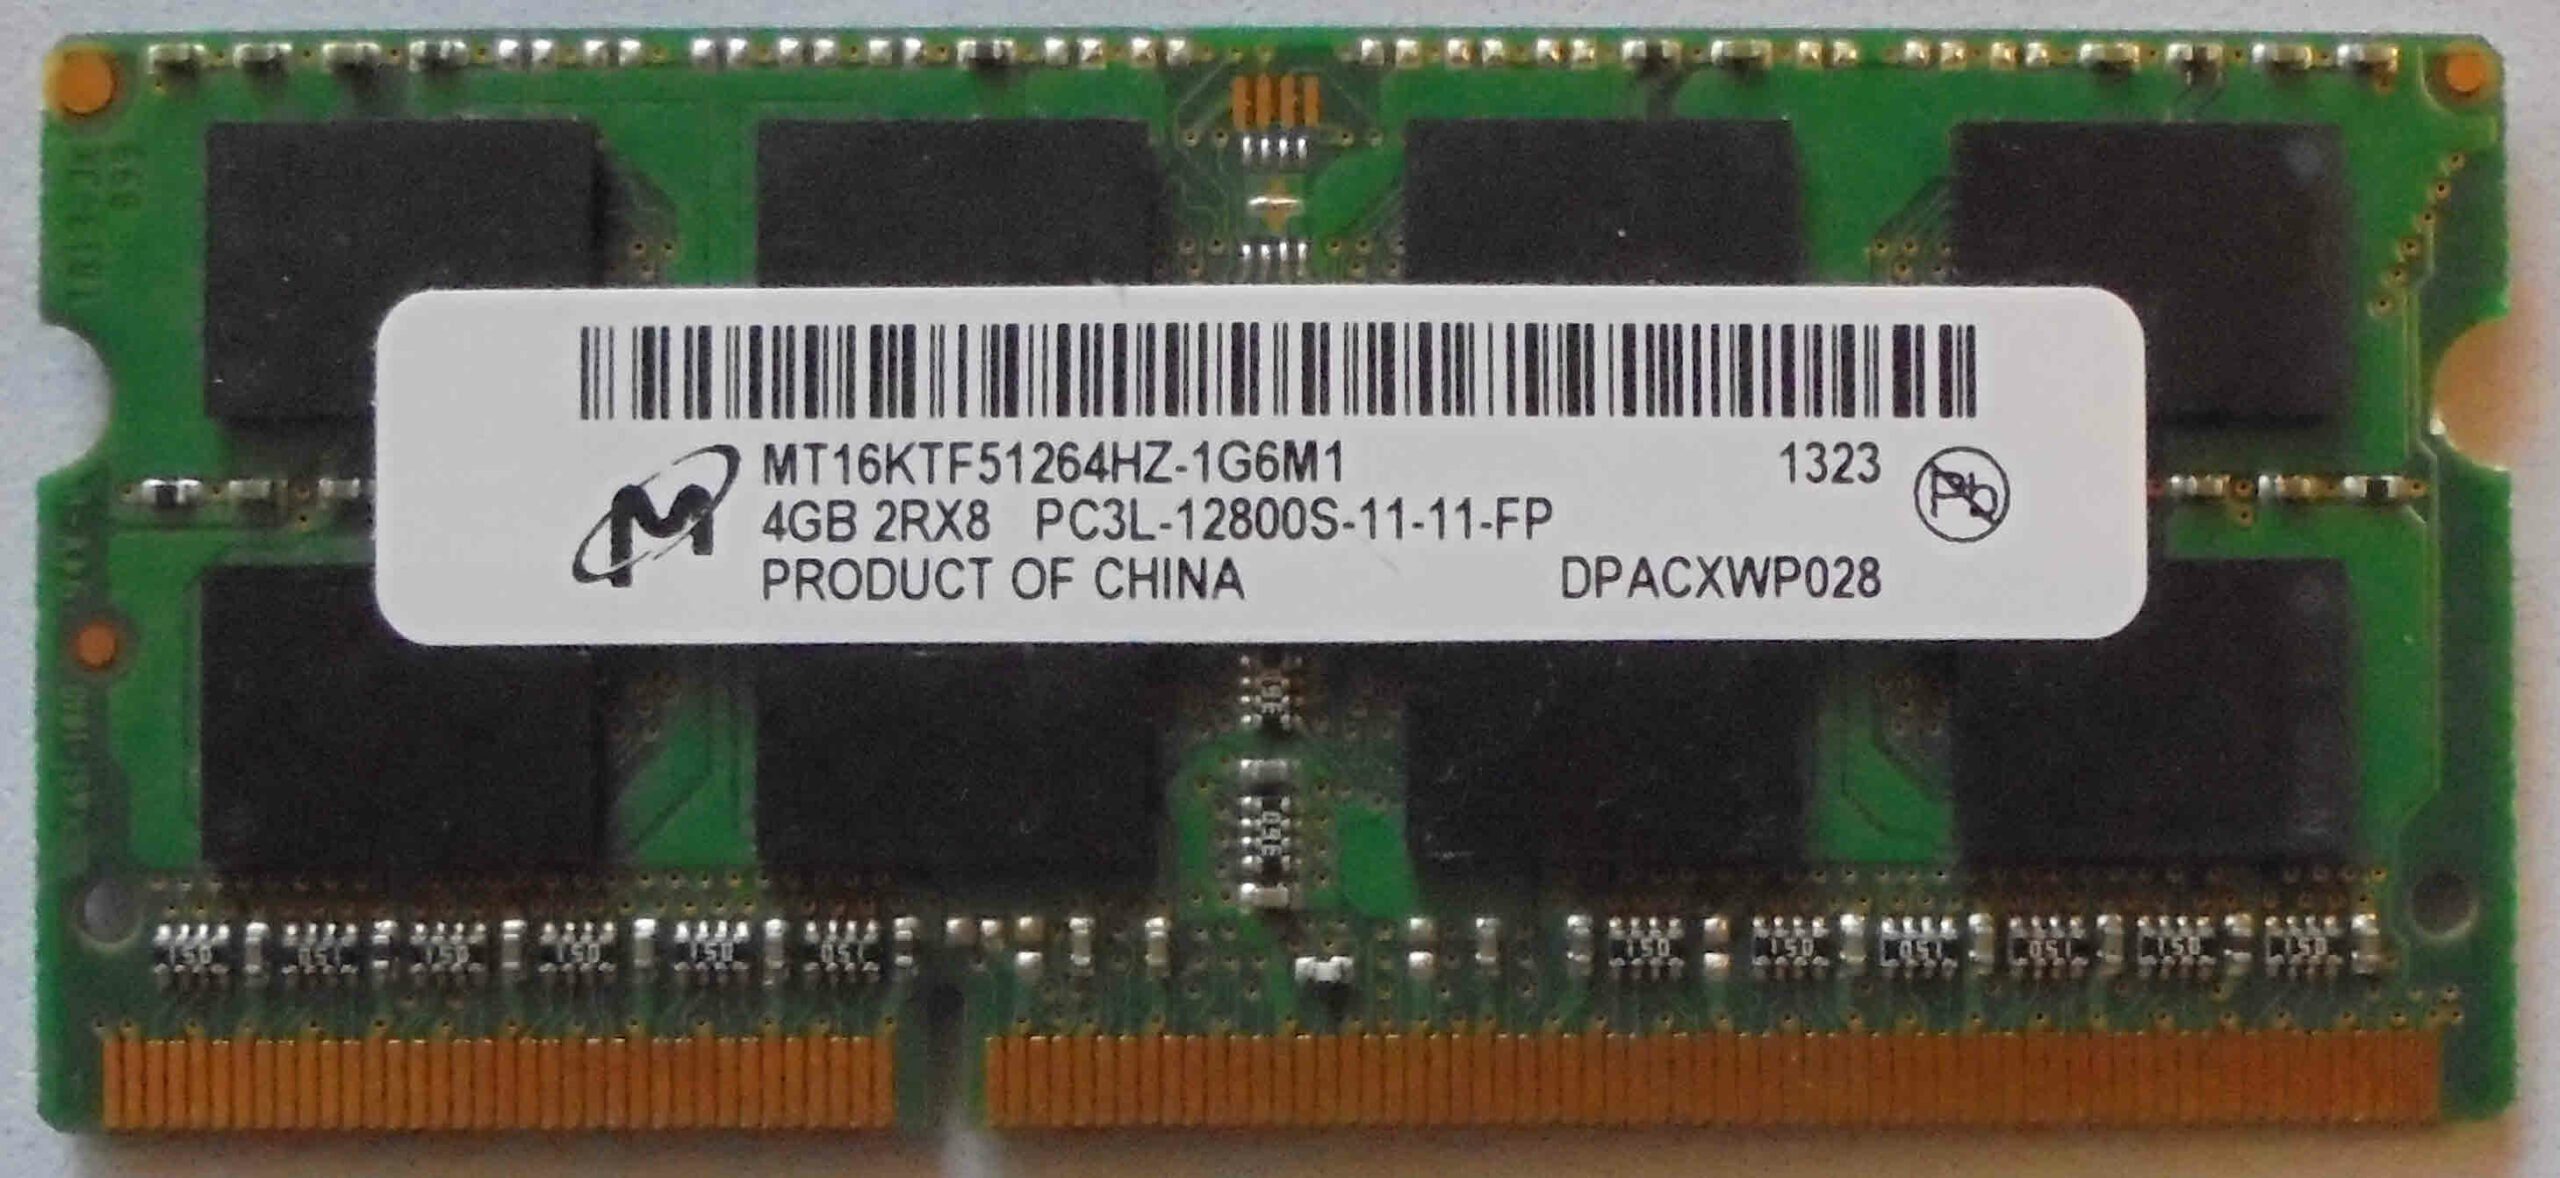 Micron 4GB 2Rx8 PC3L-12800S-11-11-FP